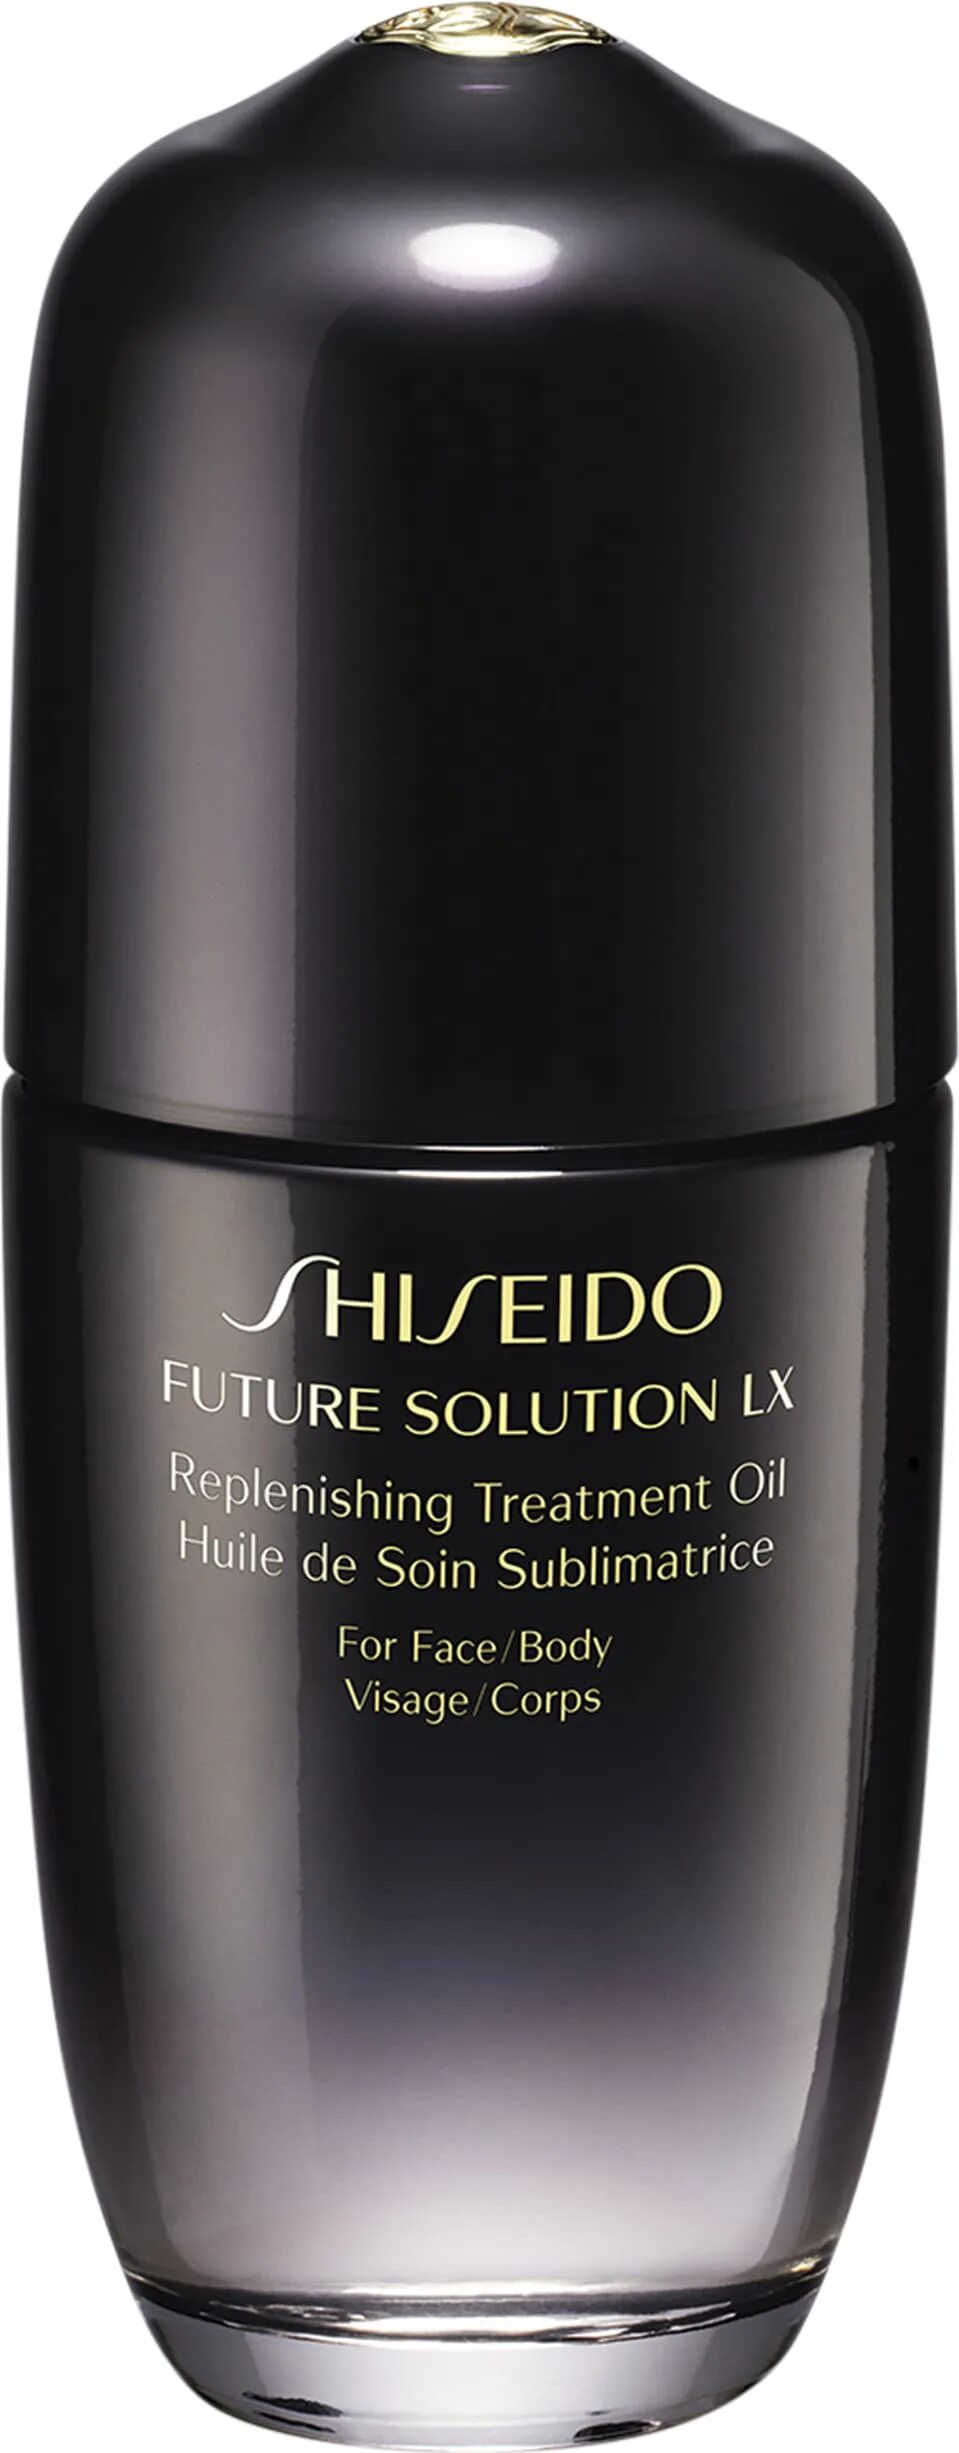 Shiseido Future solution LX масло. Универсальное питательное масло Shiseido. Shiseido Future solution LX Oil купить. Масло Shiseido Future solution LX отзывы.